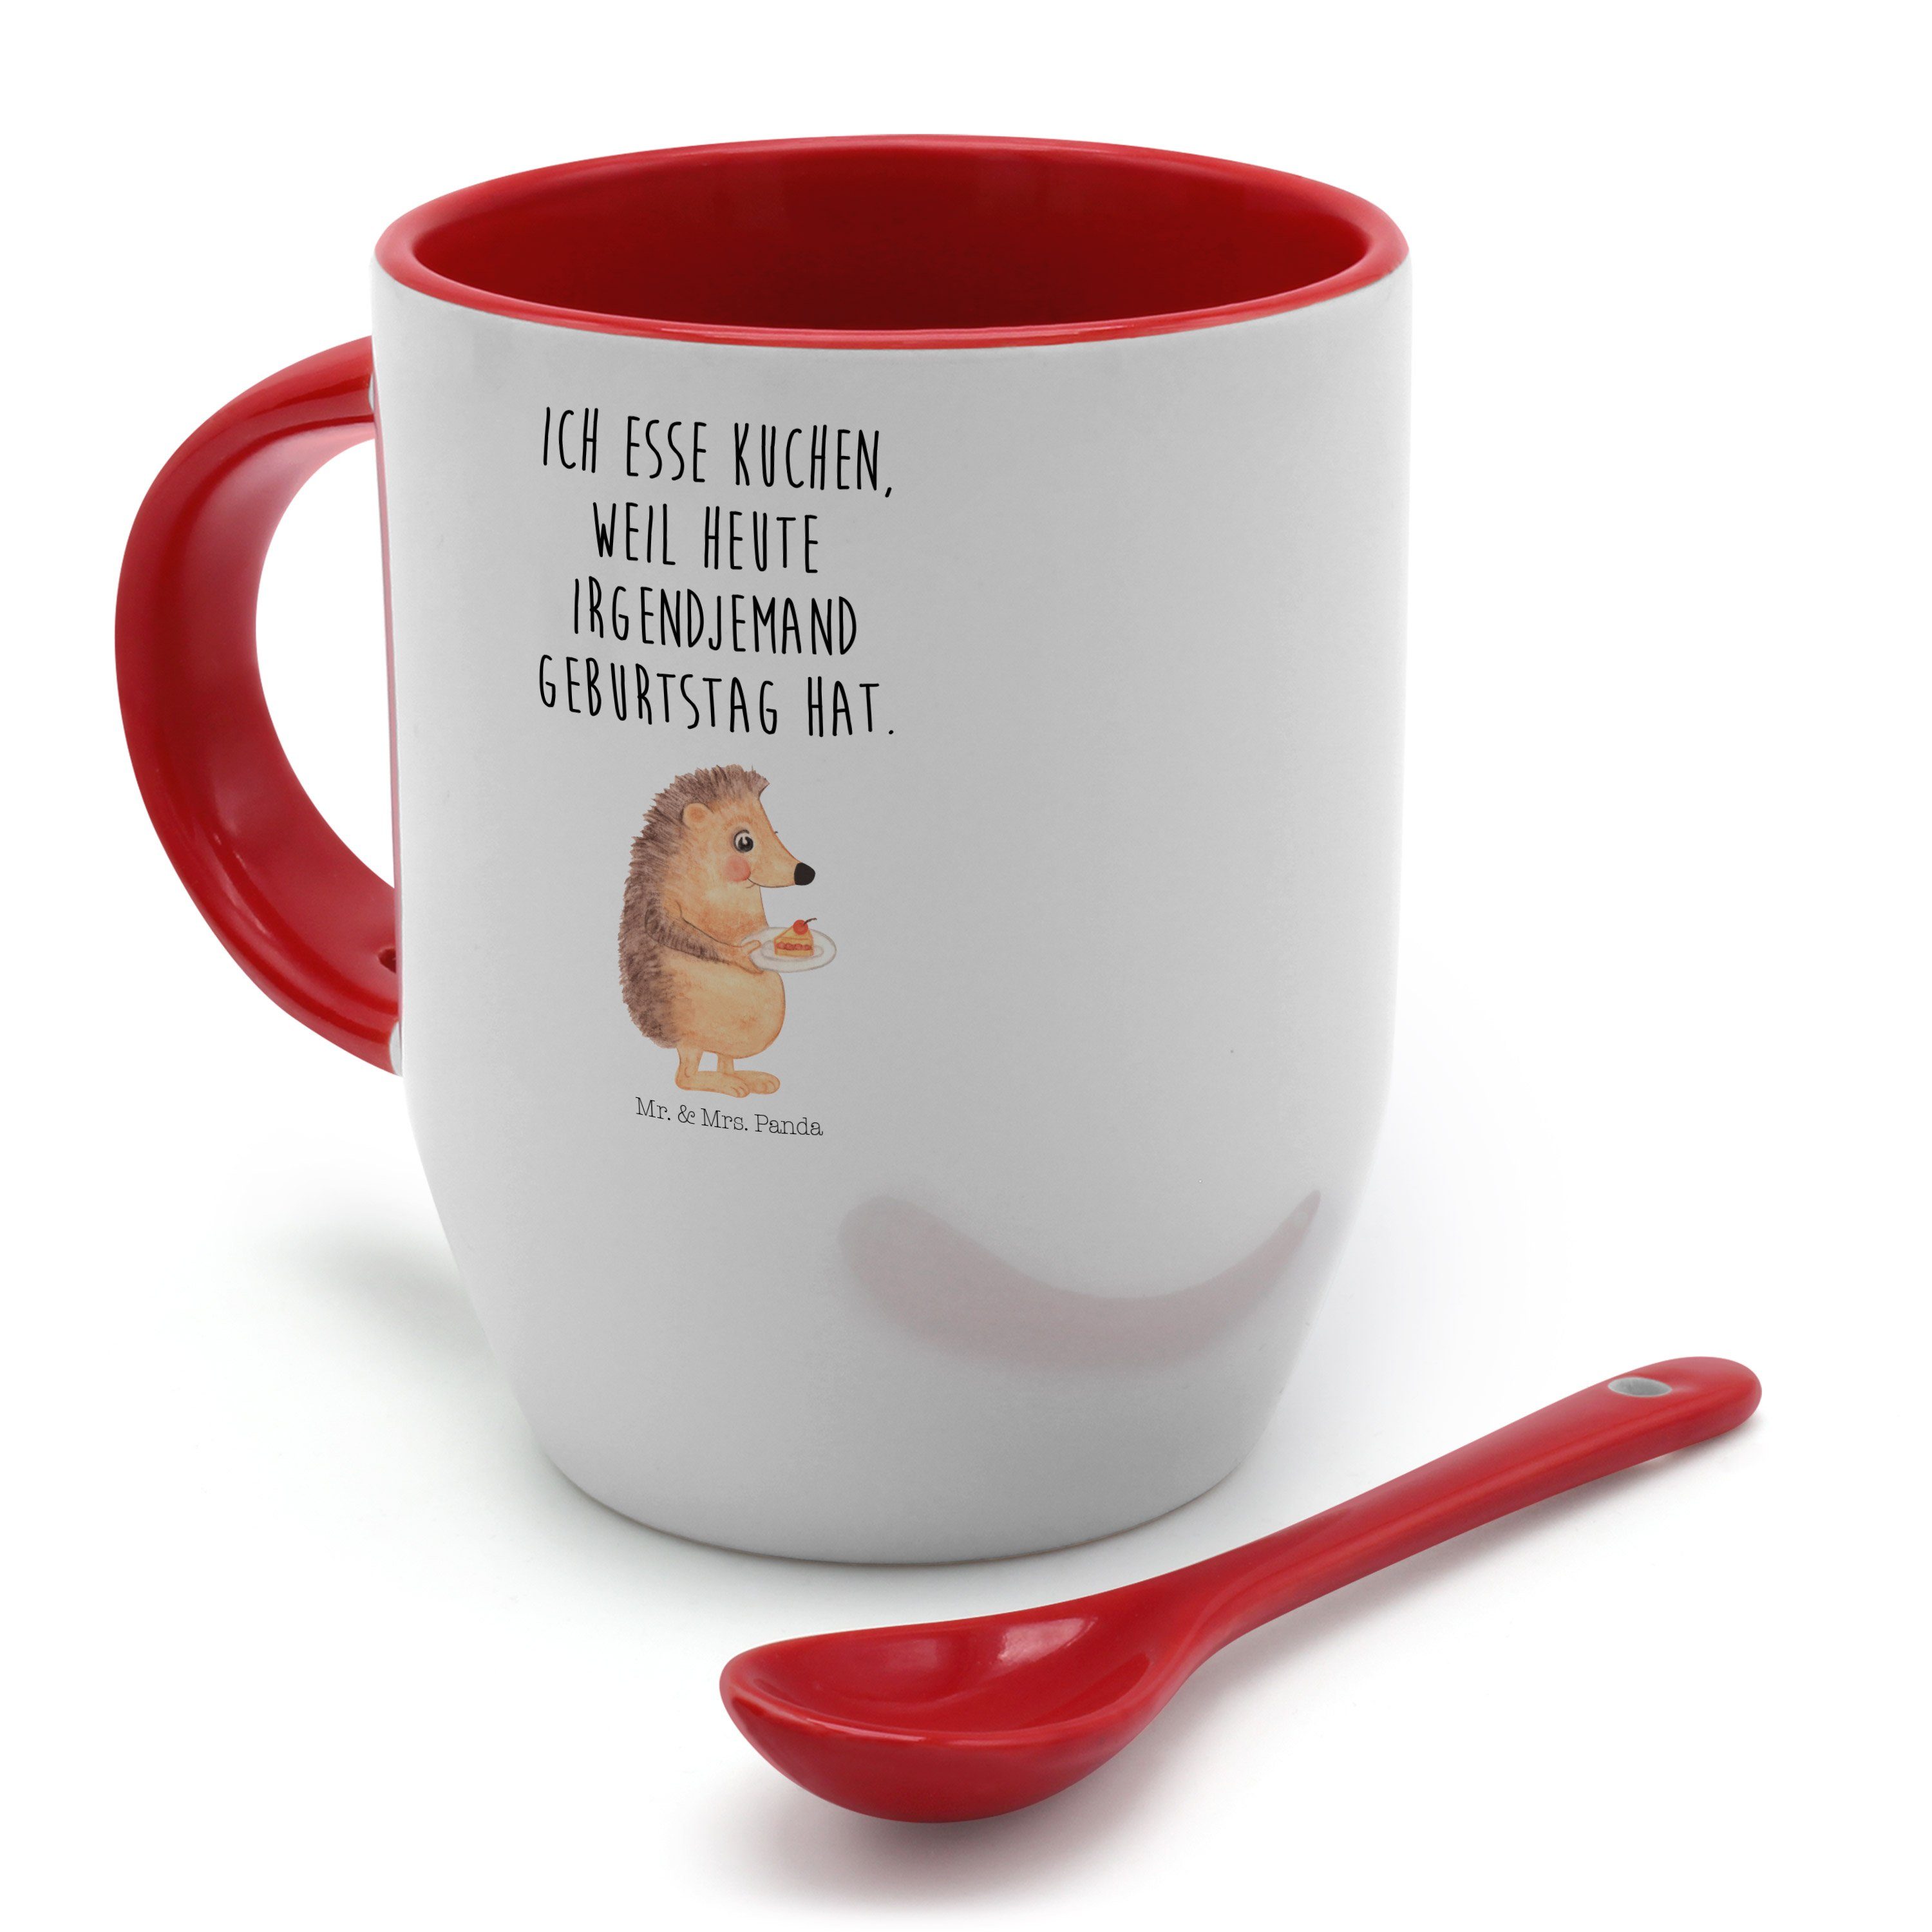 Mr. & Mrs. mit Panda Kaffeetasse, mit - Weiß Geschenk, - Keramik Tasse Kuchenstück Tasse Spruch, Igel